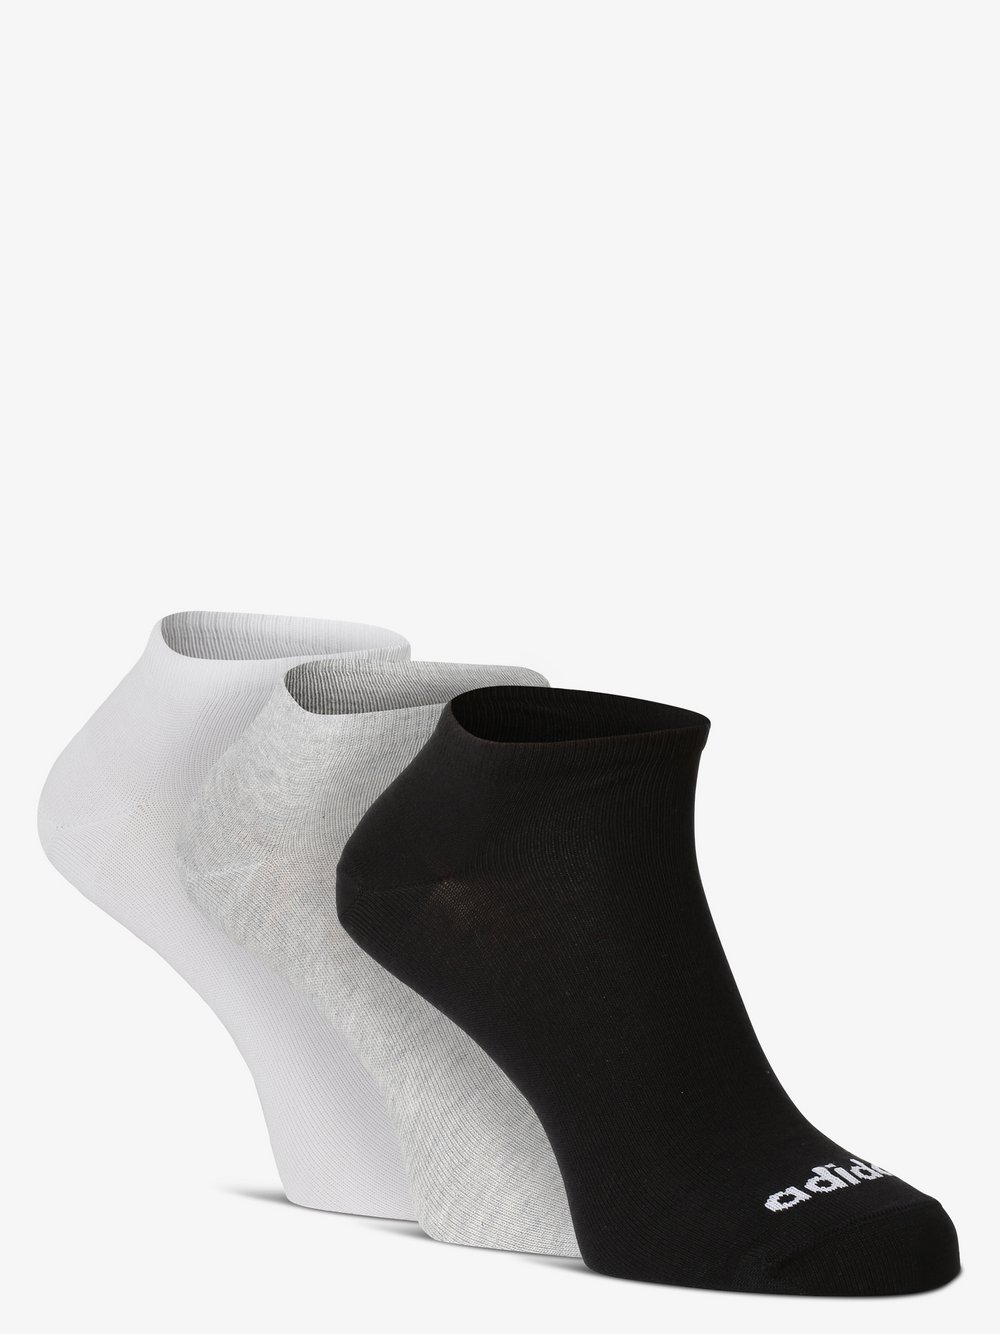 Adidas Originals - Skarpety do obuwia sportowego pakowane po 3 szt., szary|czarny|biały